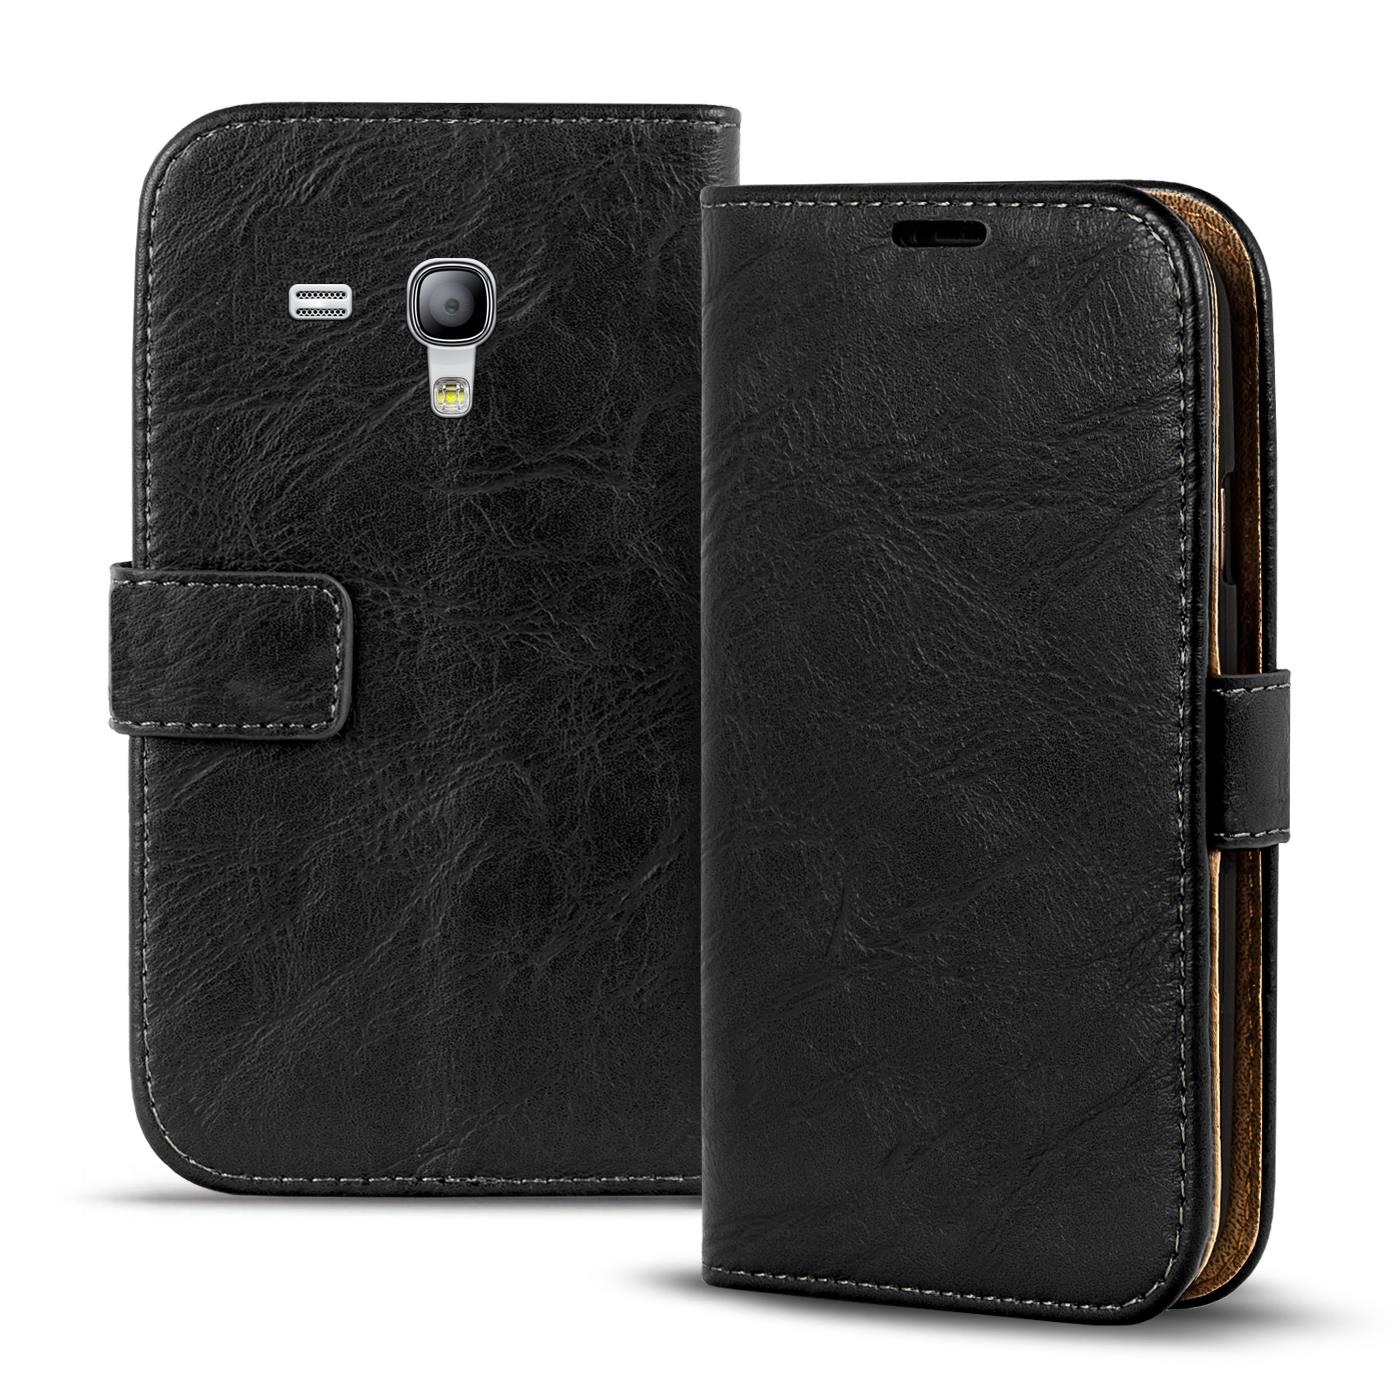 3St.Samsung Galaxy S3 mini Handy Taschen Set mit Schutzfolie Flip Etui Book Case 